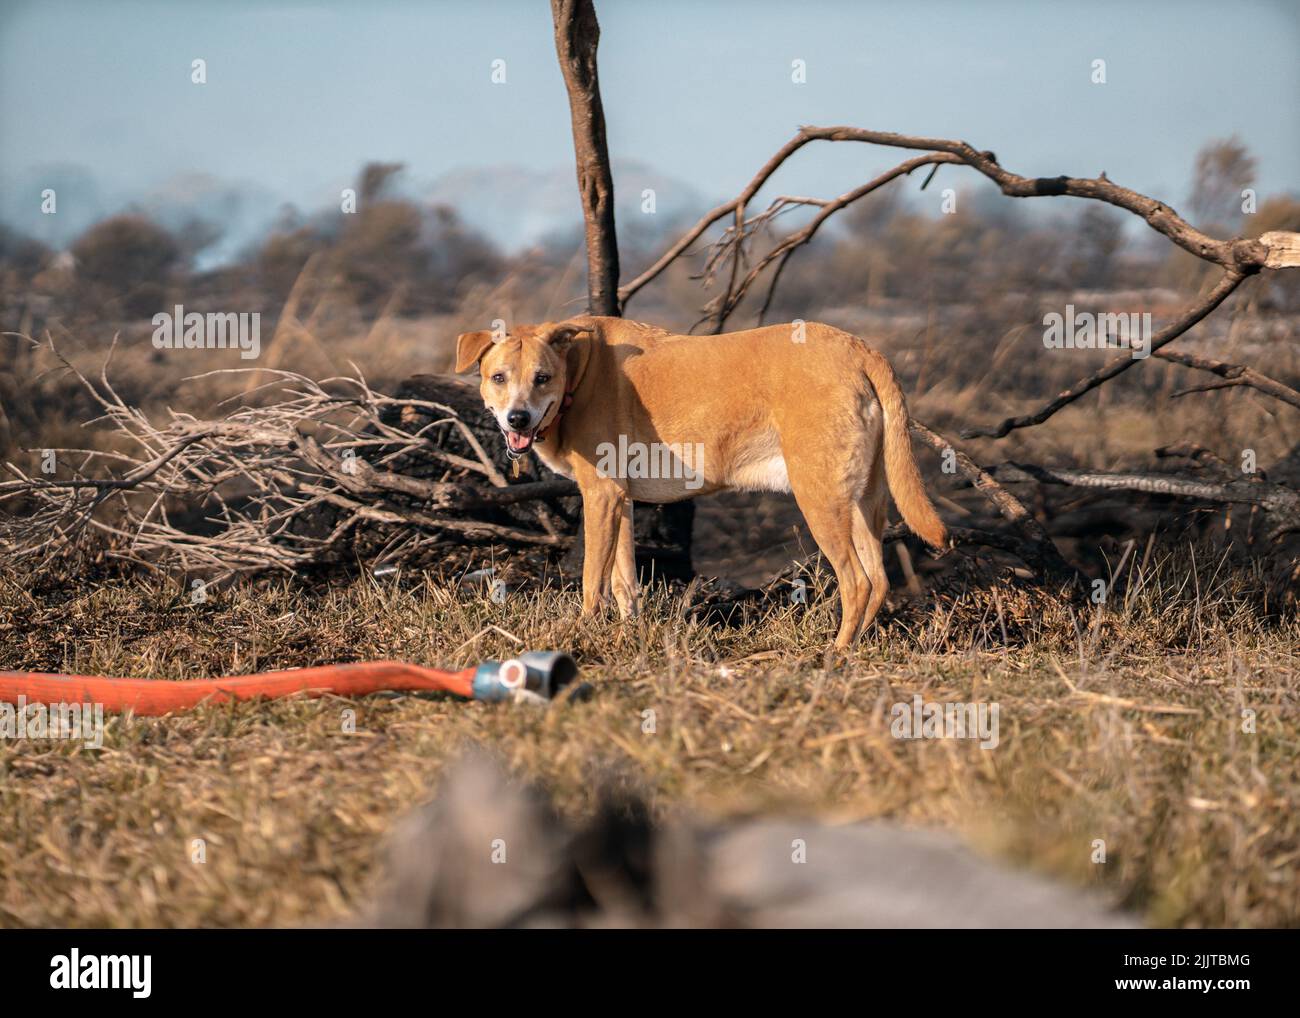 Una messa a fuoco poco profonda di un cane marrone aficanis carino su un'erba asciutta Foto Stock